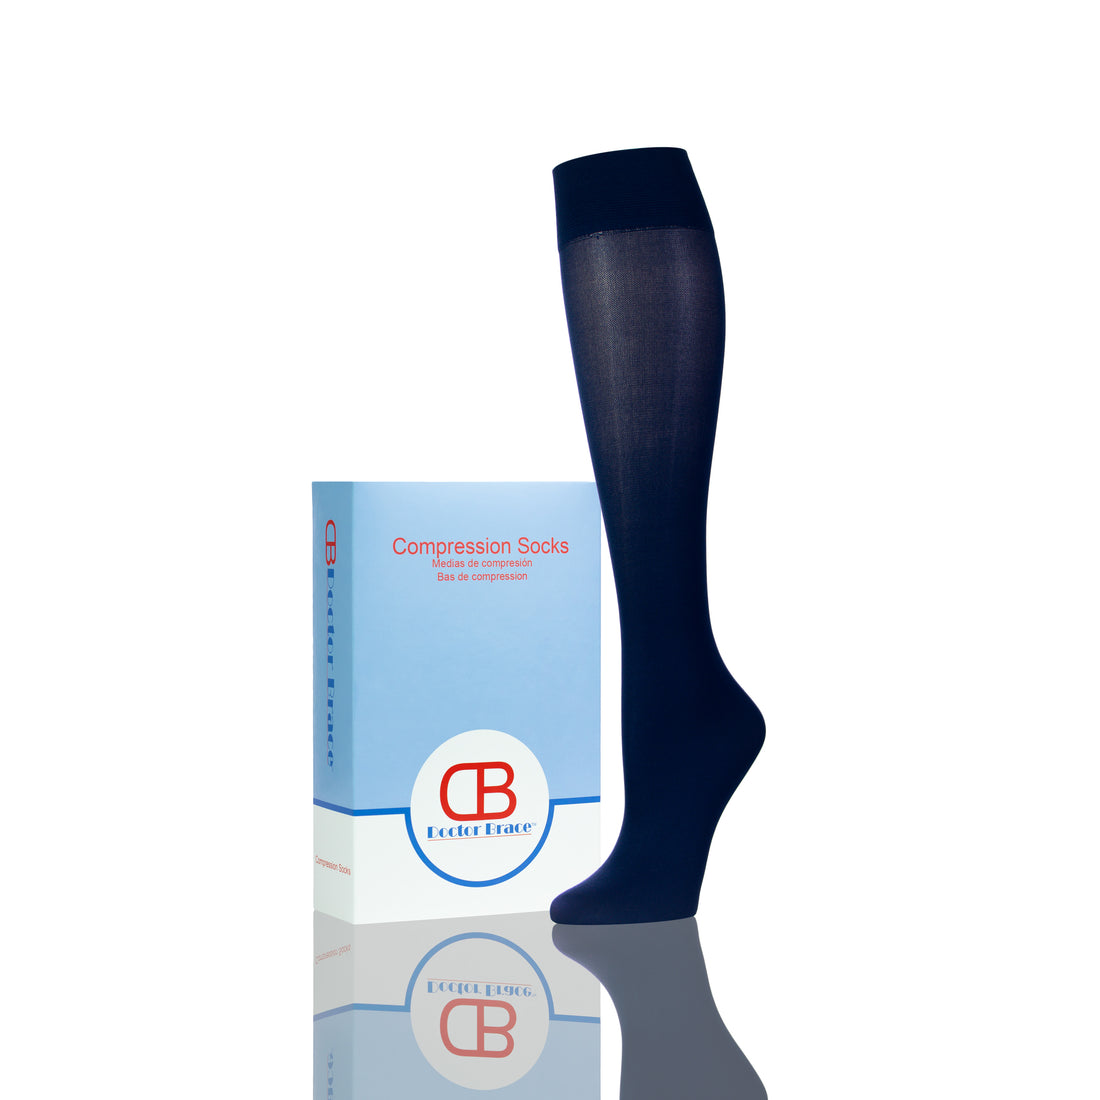 Compression Socks For Nurses